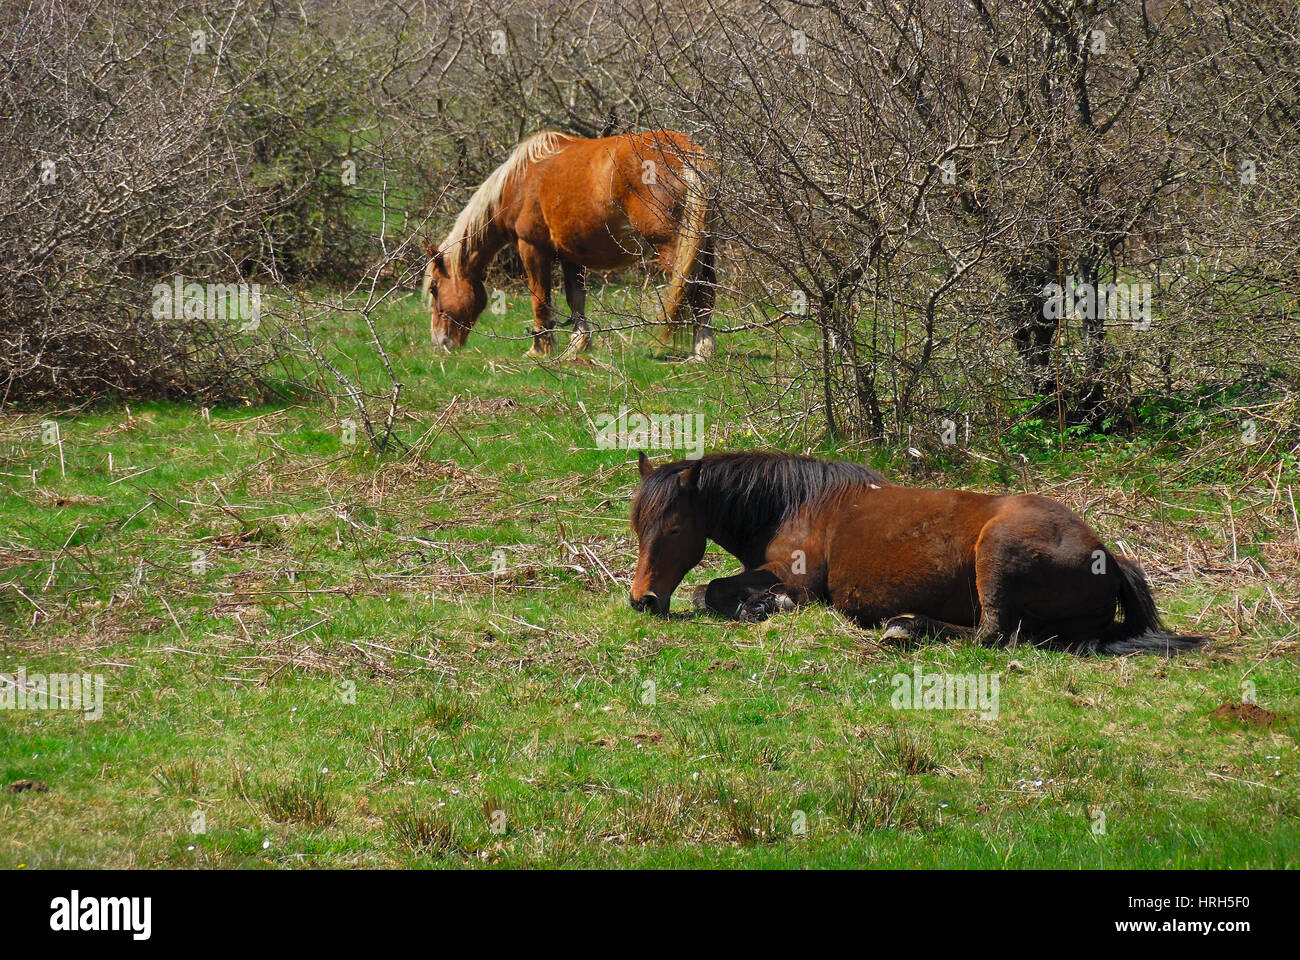 Le pâturage des chevaux sur le plateau du Matese, Campanie, Italie. Banque D'Images